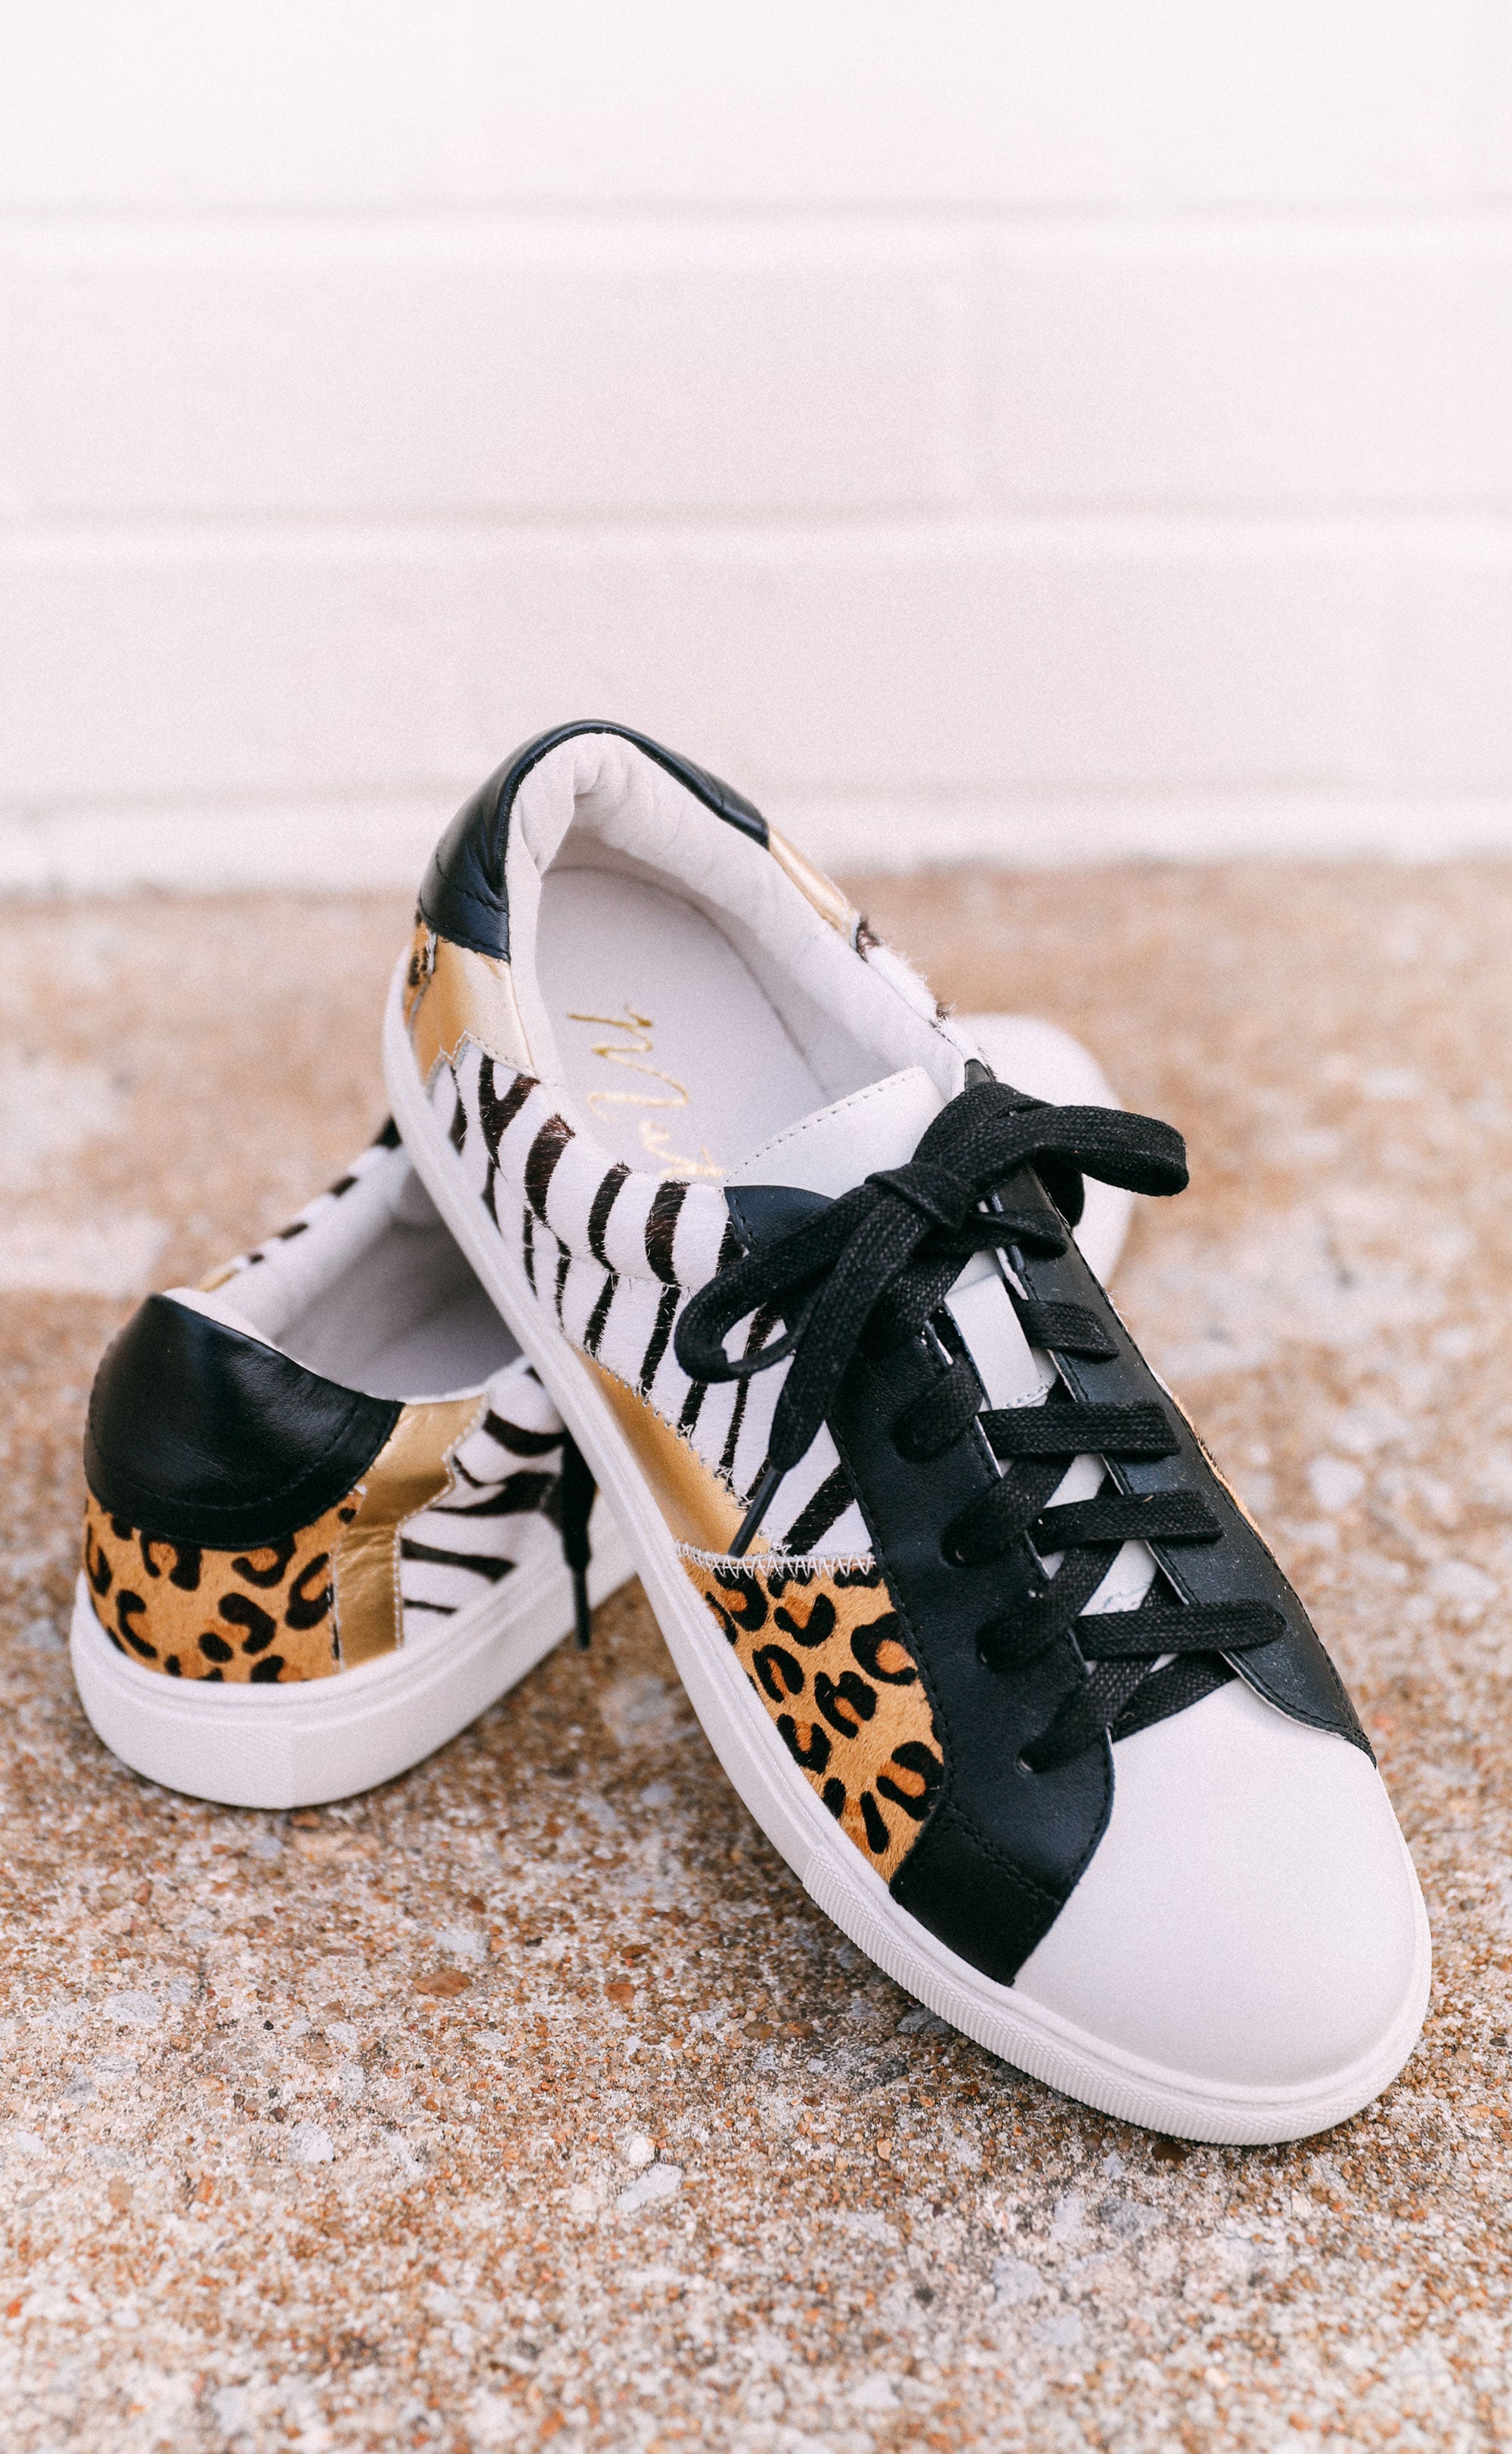 matisse leopard sneakers